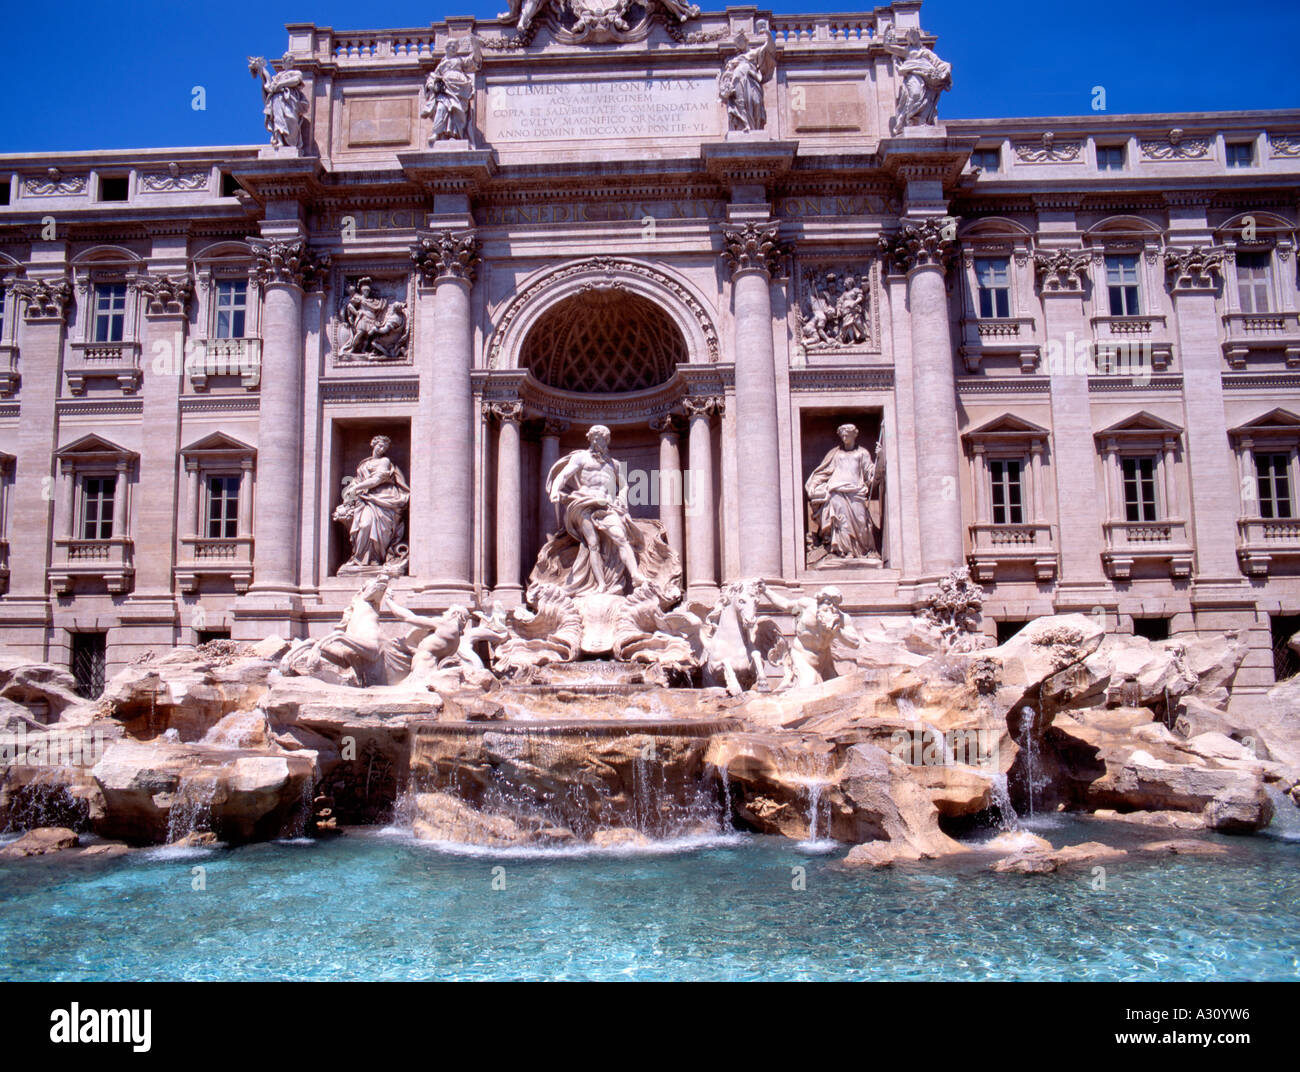 La fontaine de Trevi ou la fontaine de Trevi est la plus célèbre et sans doute la plus belle fontaine de Rome, Italie. Banque D'Images